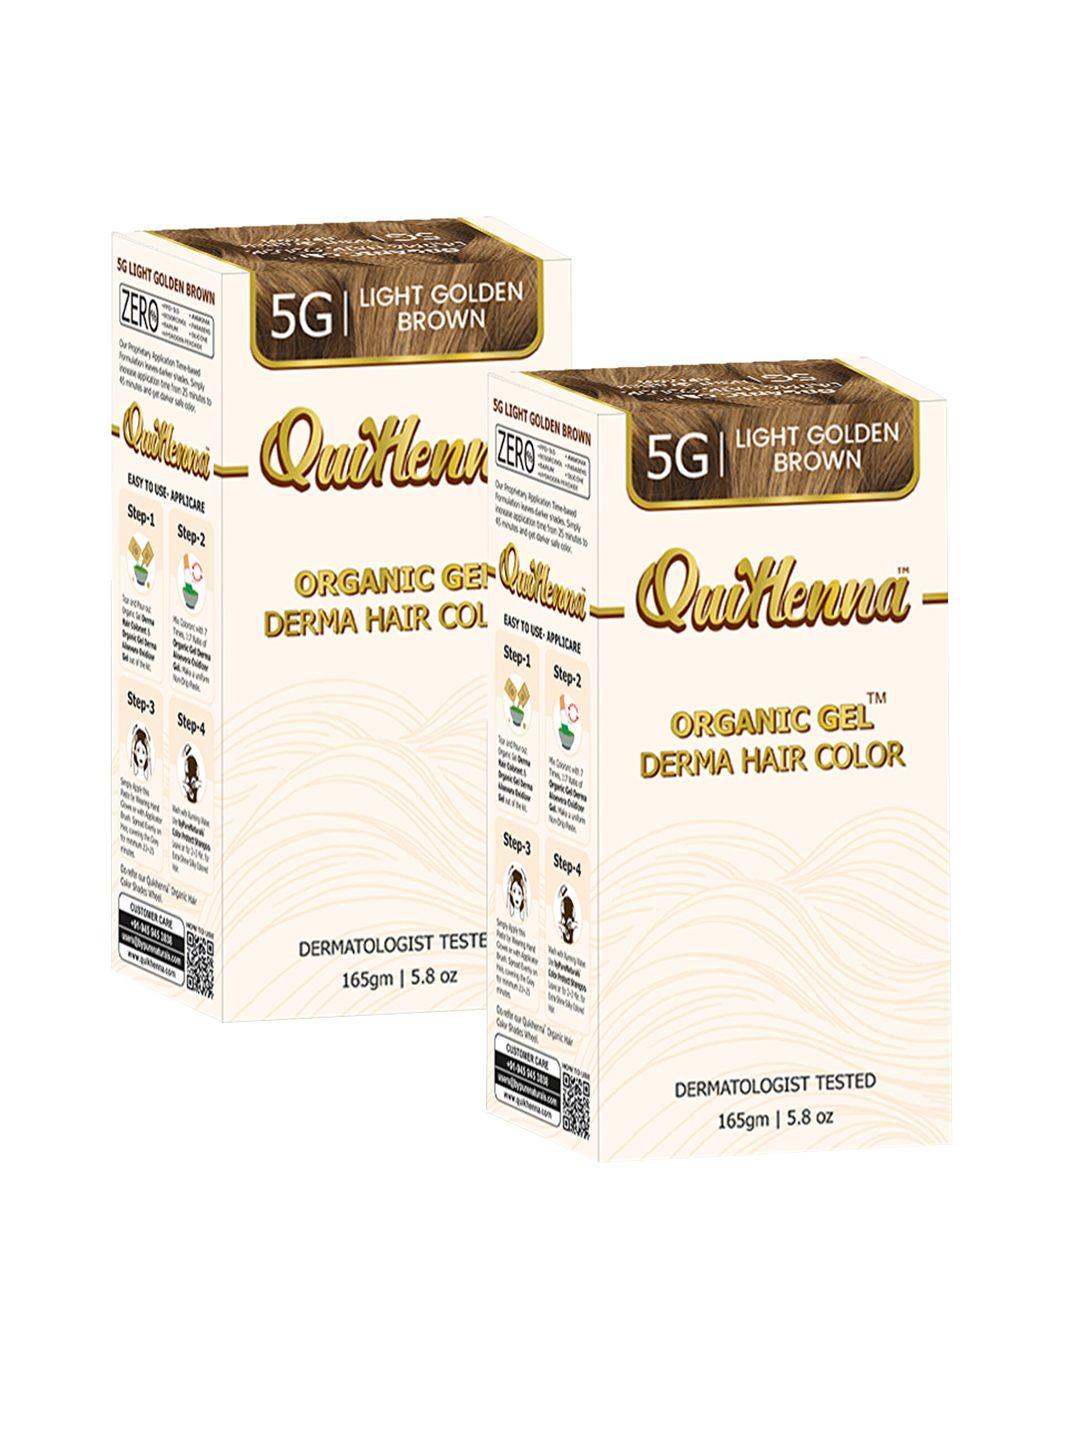 quikhenna organic gel set of 2 derma hair colours - light golden 5g